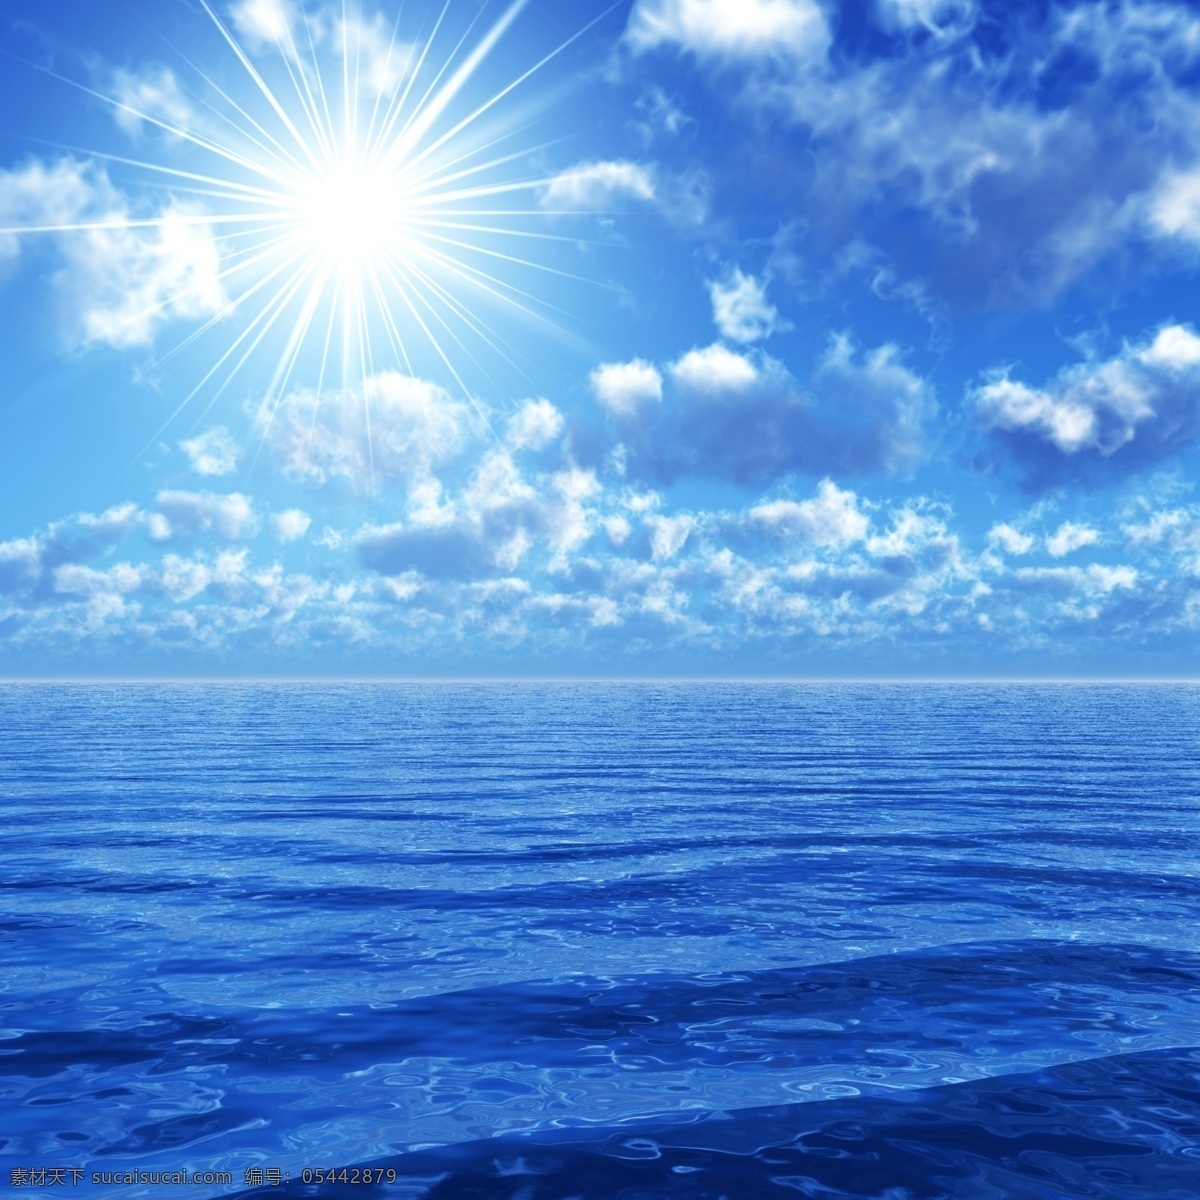 蓝天 大海 风景 旅游 风景区 海面 悠闲 假日 碧海蓝天 美景 海洋海边 阳光 光芒 蓝天白云 大海图片 风景图片